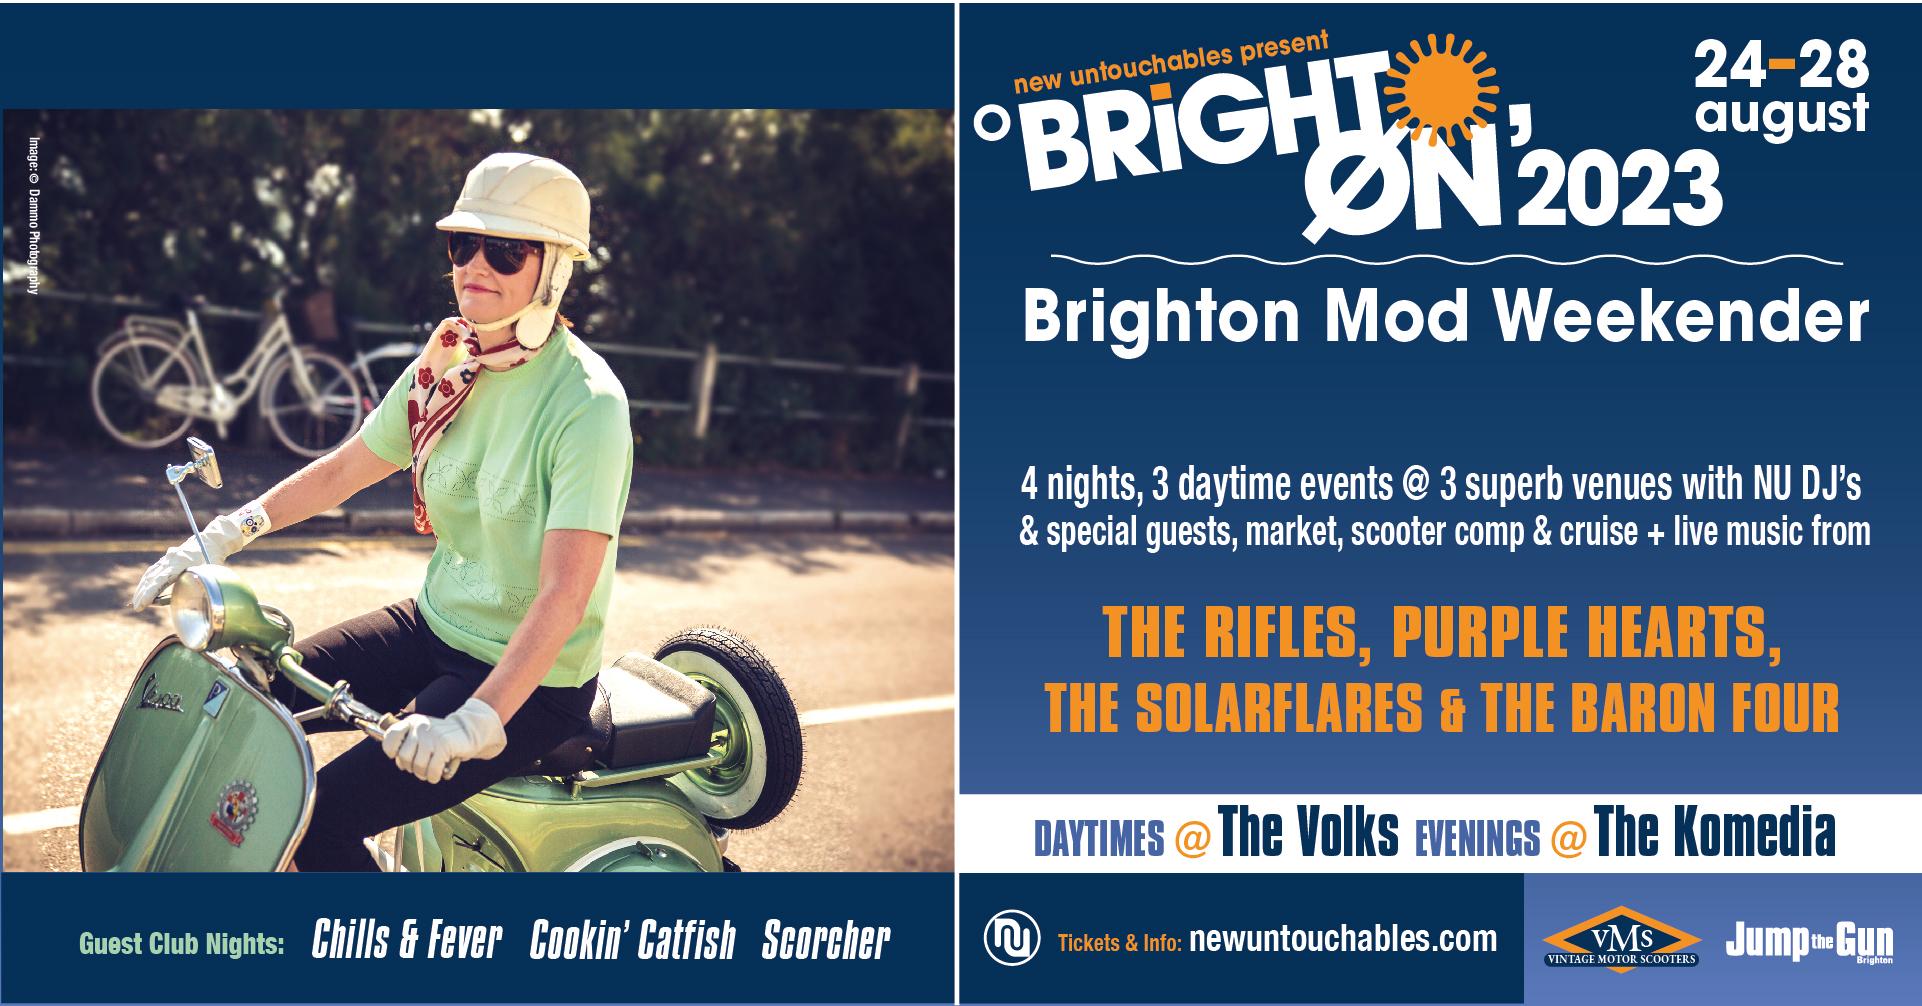 Brighton Mod Weekender 2023